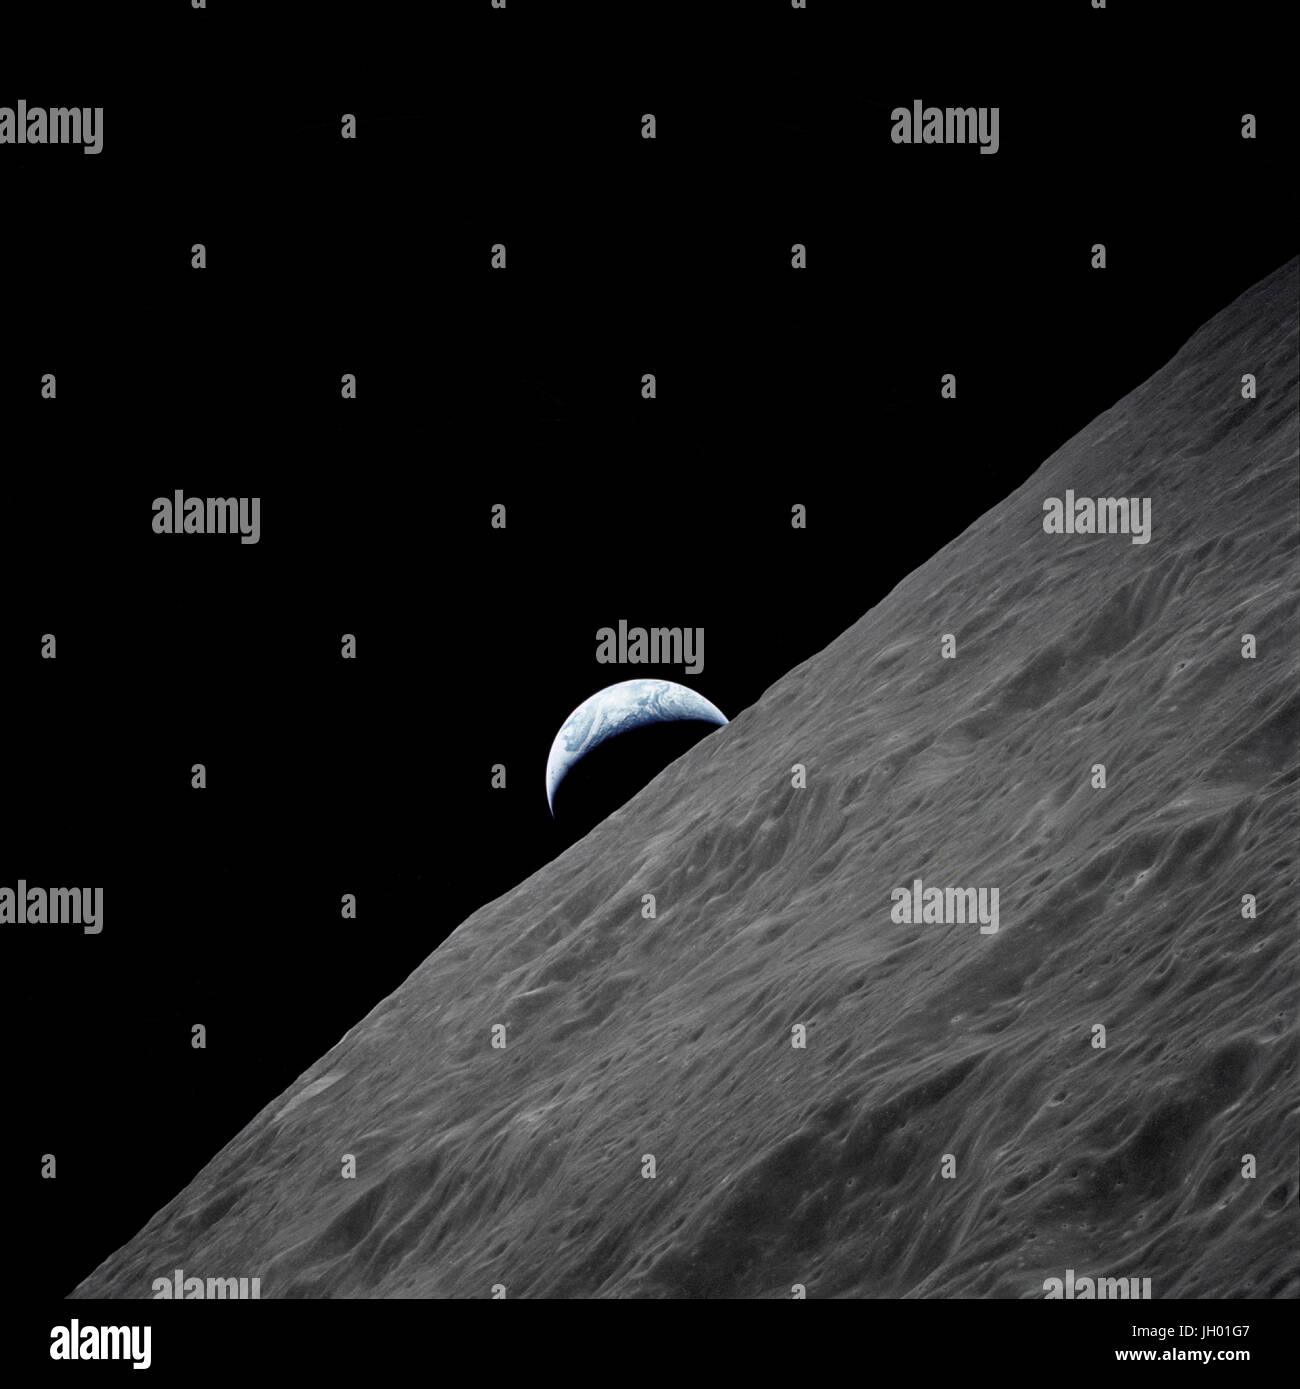 Der Halbmond Erde erhebt sich über dem lunar Horizont in diesem spektakulären Foto genommen von der Apollo 17-Sonde in die Mondumlaufbahn während letzten Mondlandung Mission in das Apollo-Programm. NASA-Foto Stockfoto